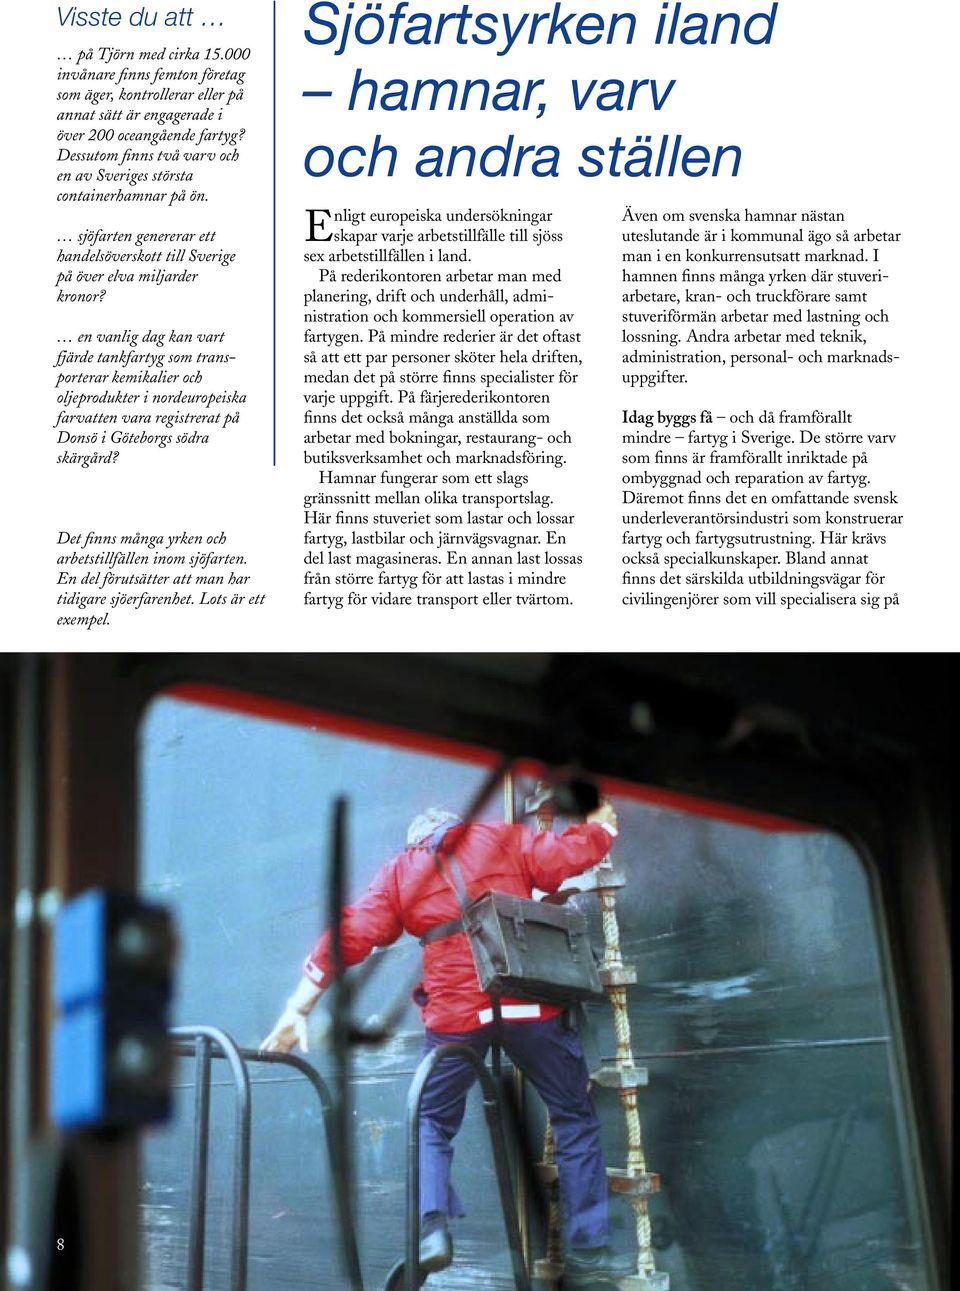 en vanlig dag kan vart fjärde tankfartyg som transporterar kemikalier och oljeprodukter i nordeuropeiska farvatten vara registrerat på Donsö i Göteborgs södra skärgård?